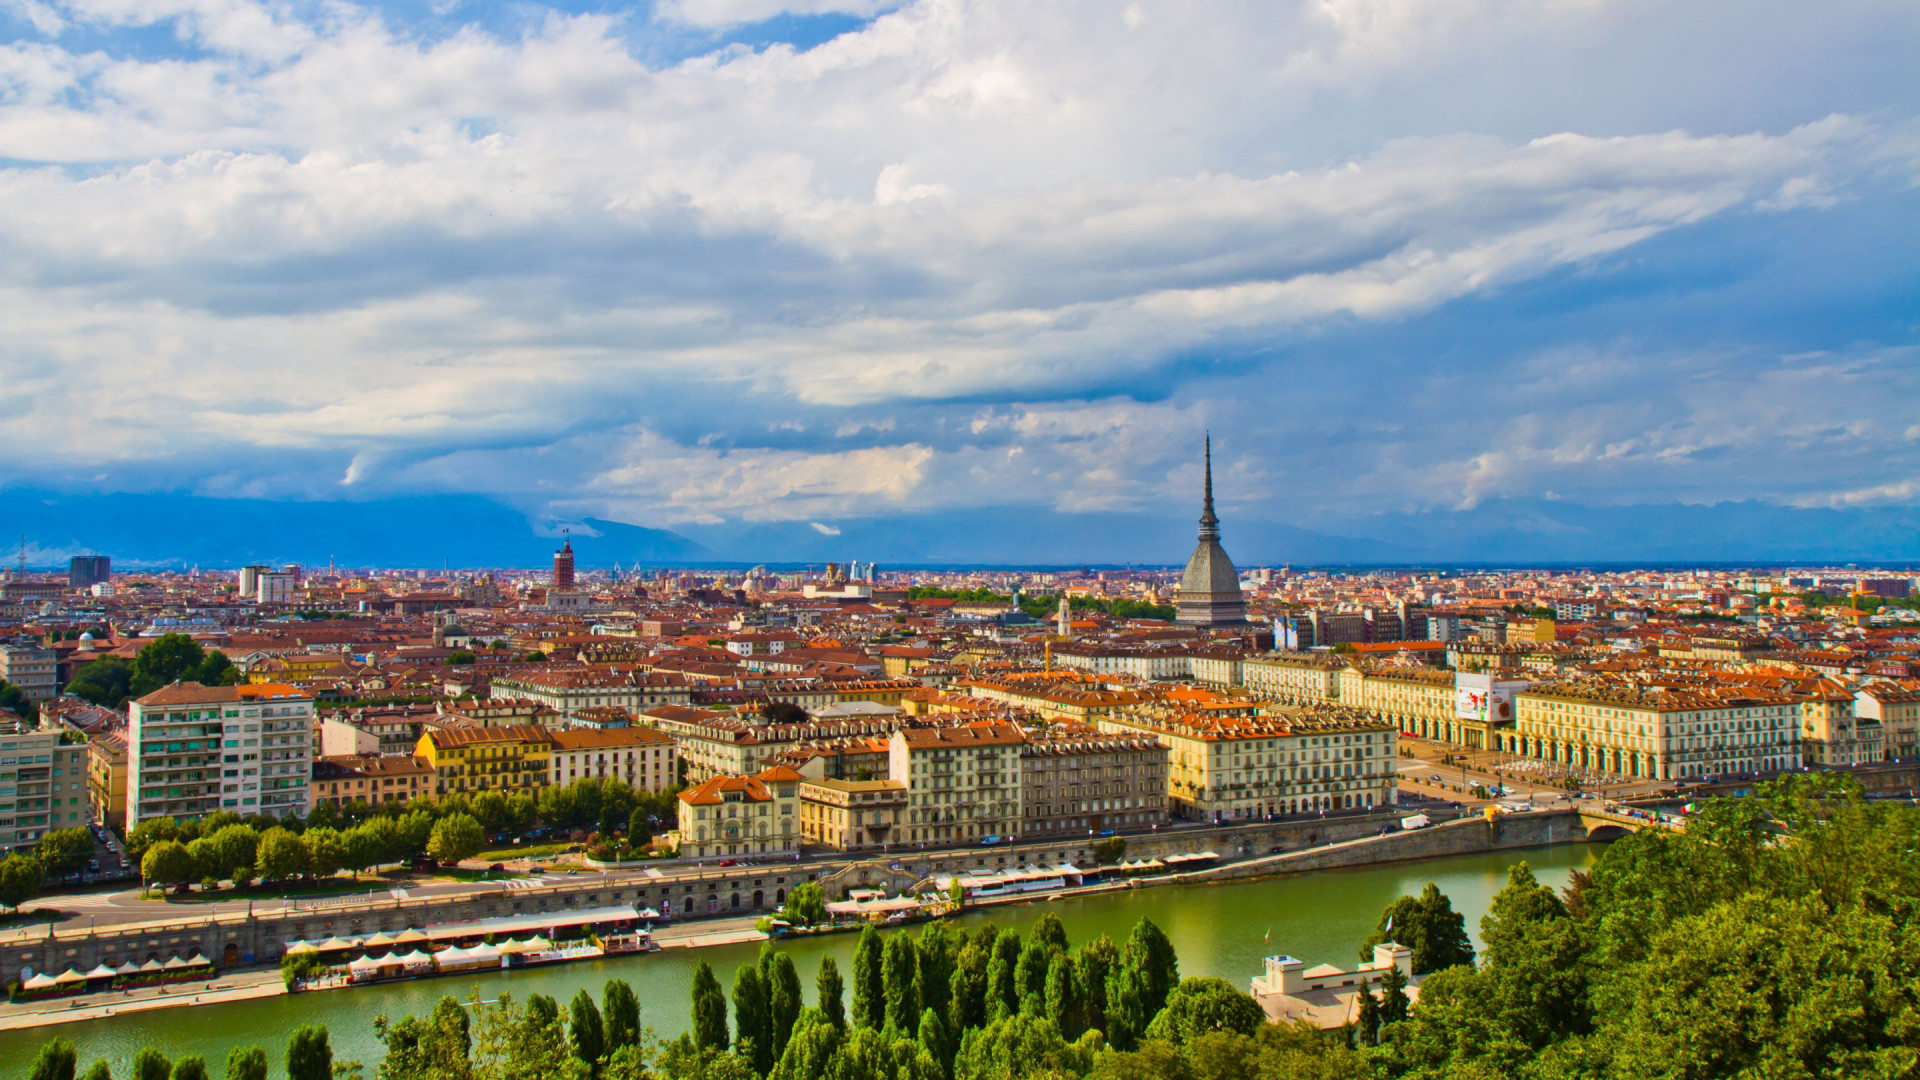 Piemonte - Turijn - rivier de Po - stadsbeeld